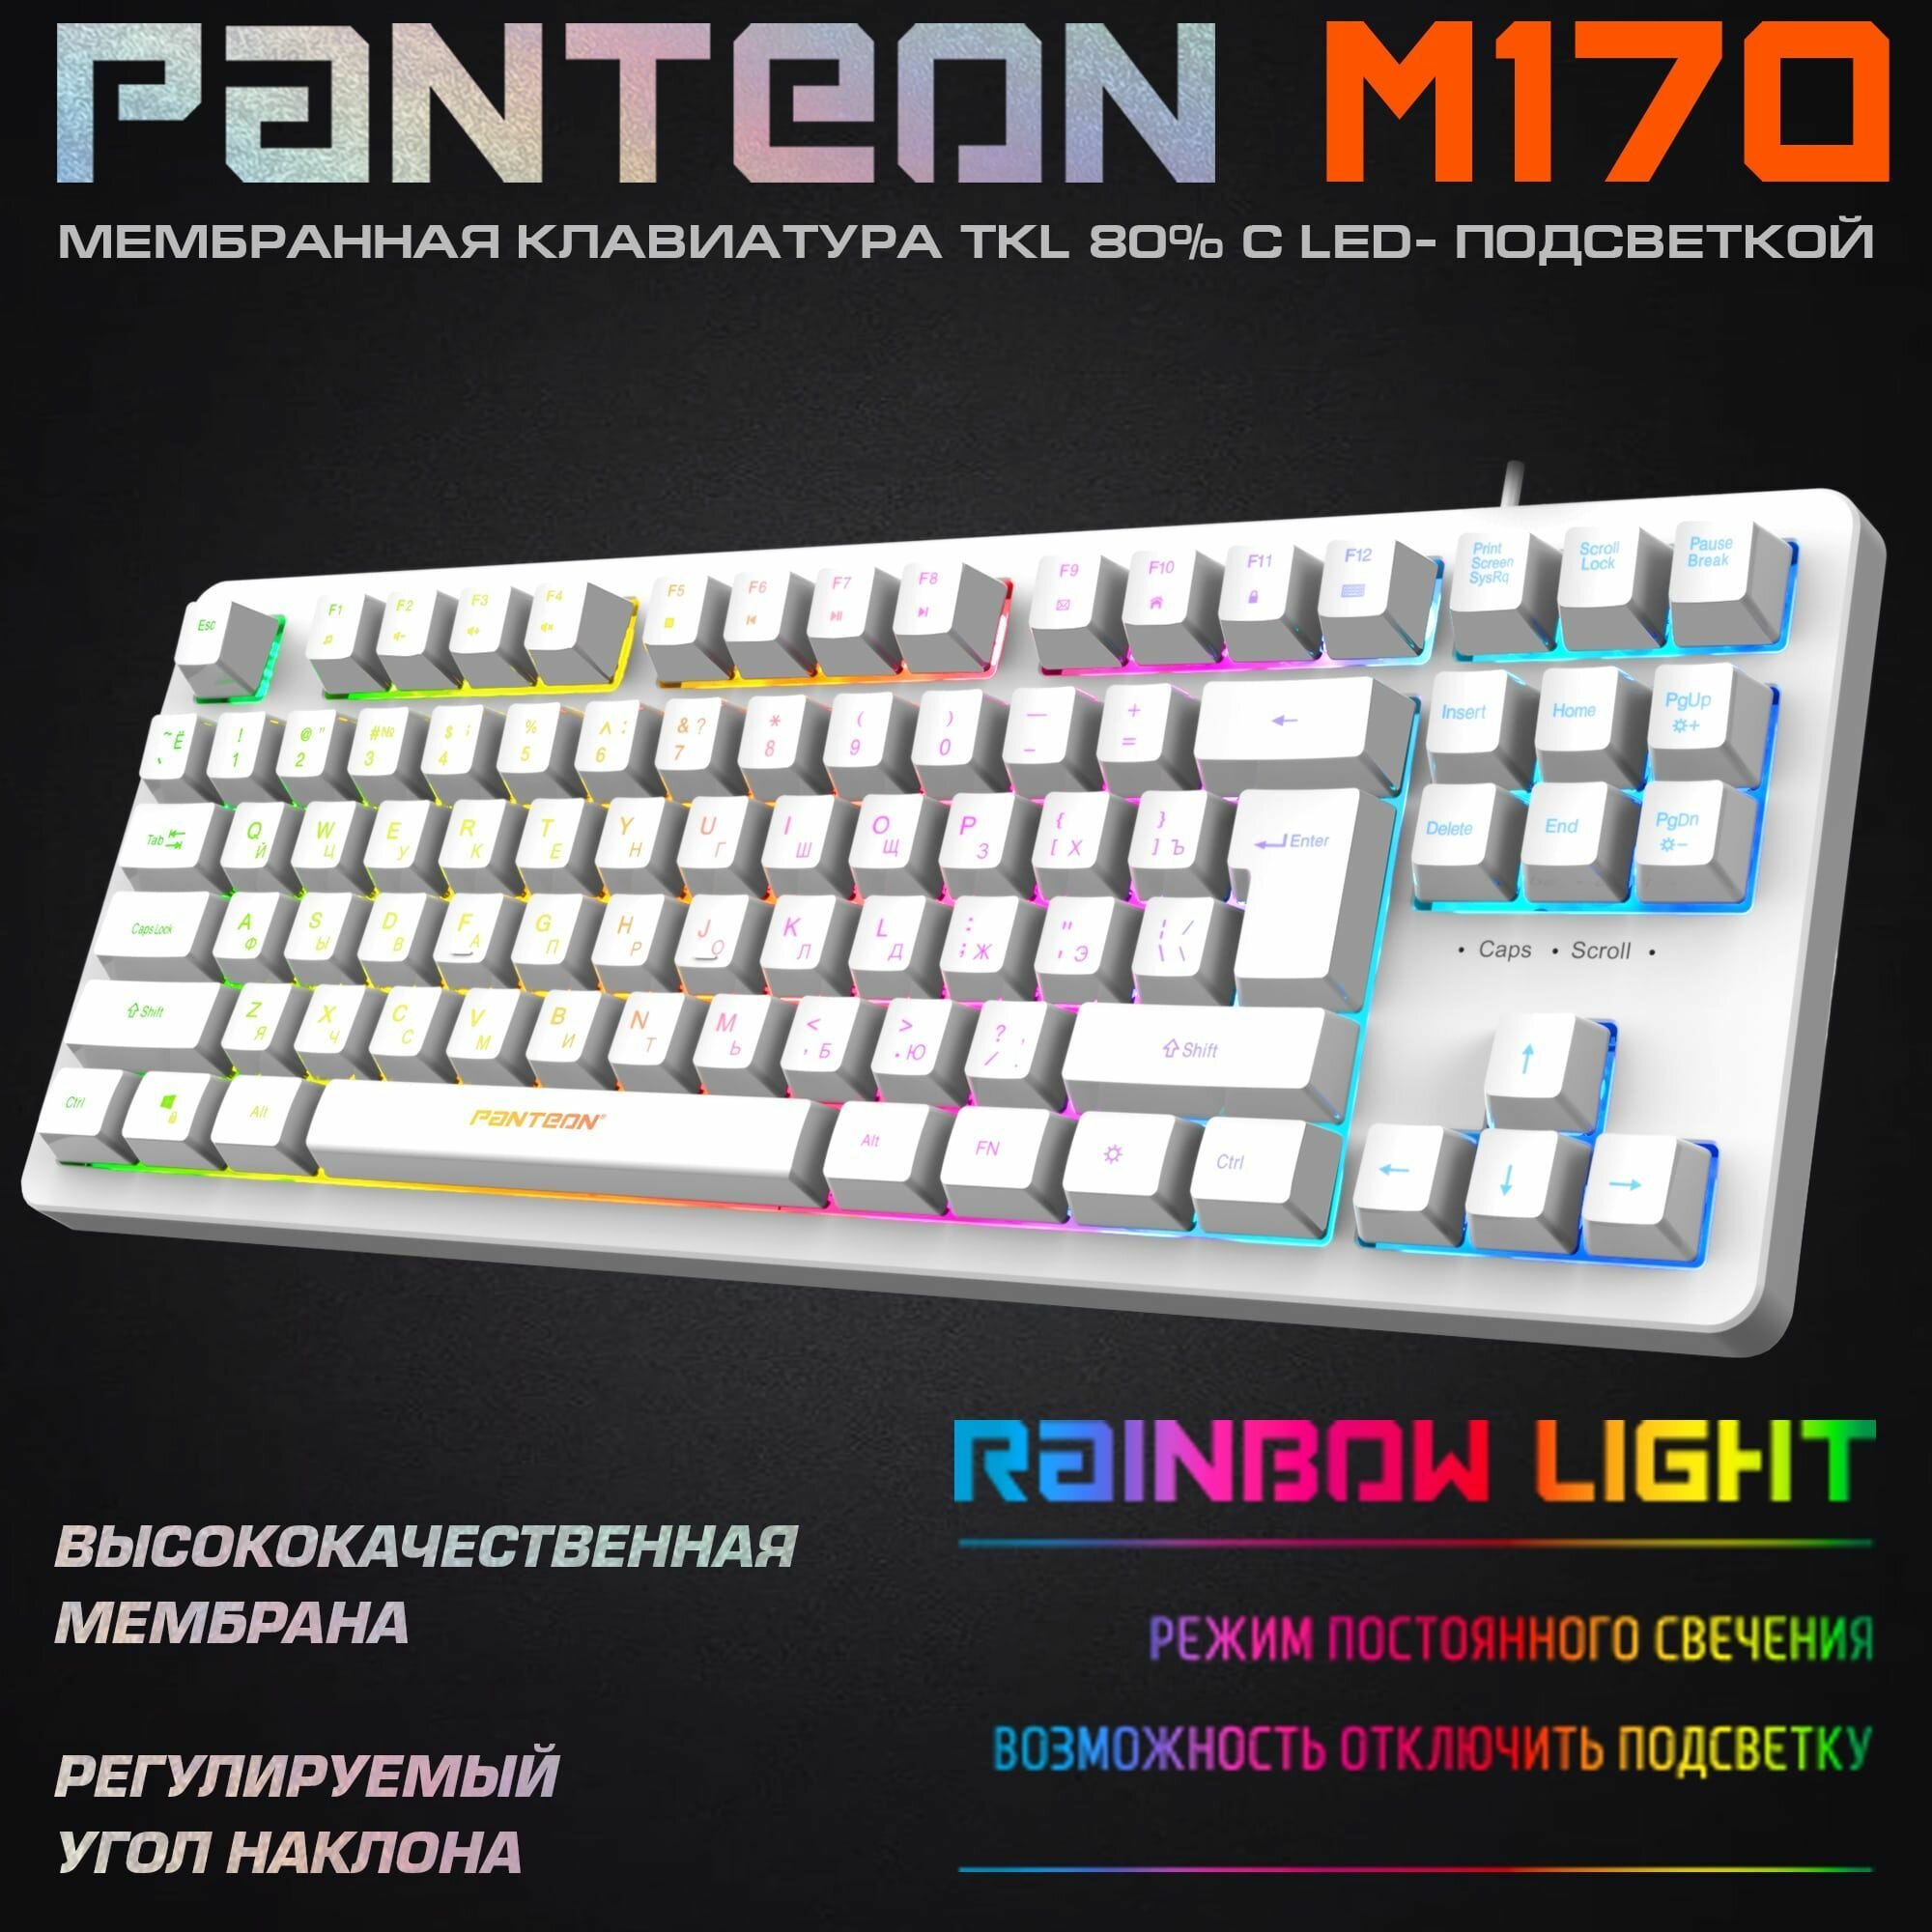 Игровая мембранная клавиатура С led-подсветкой PANTEON M170 бел